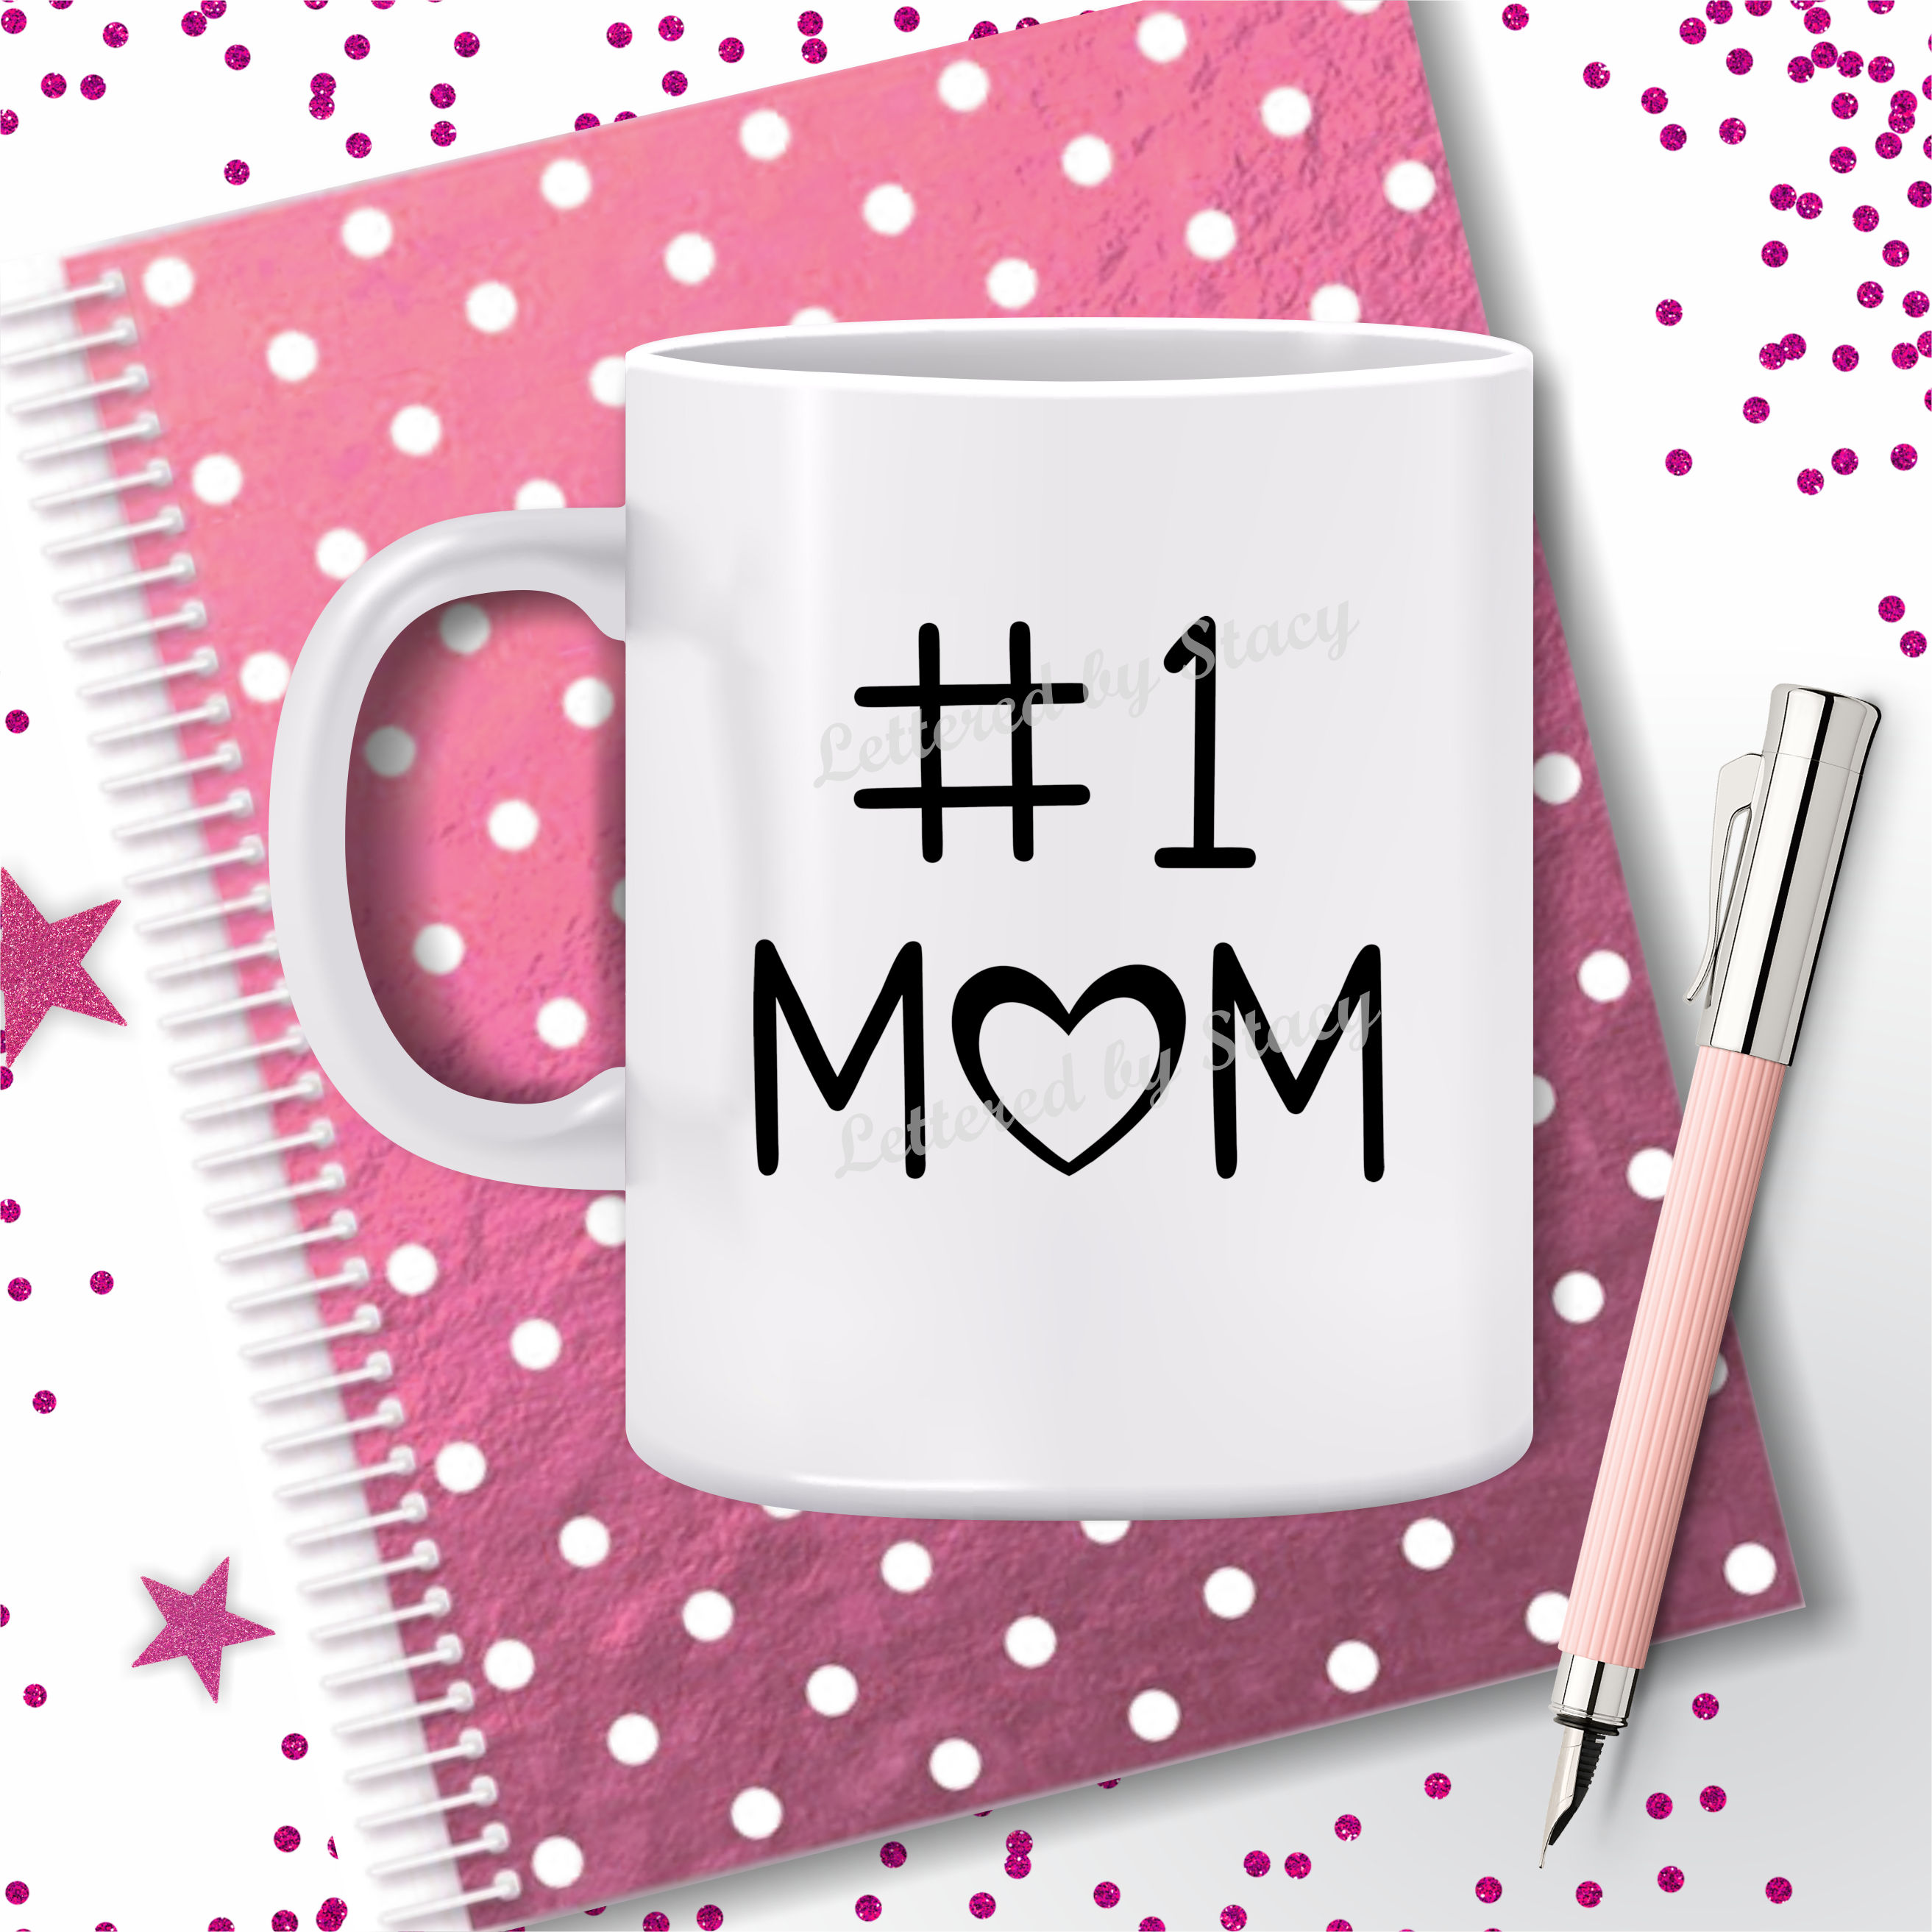 Download Mom SVG - Number one mom SVG with heart design